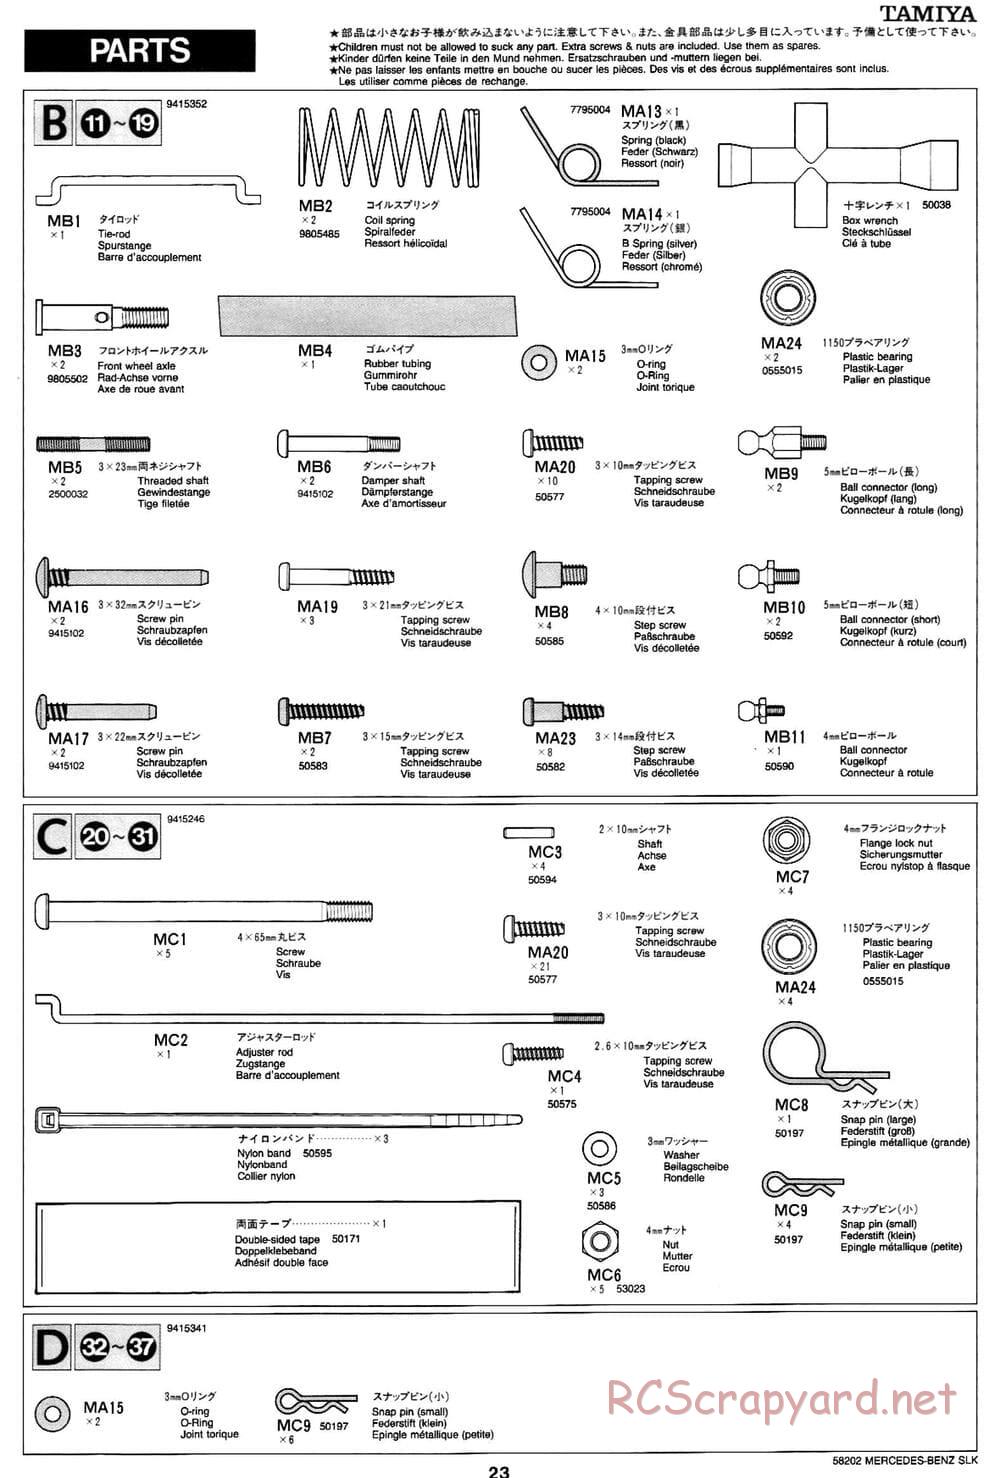 Tamiya - Mercedes-Benz SLK - M02L Chassis - Manual - Page 23